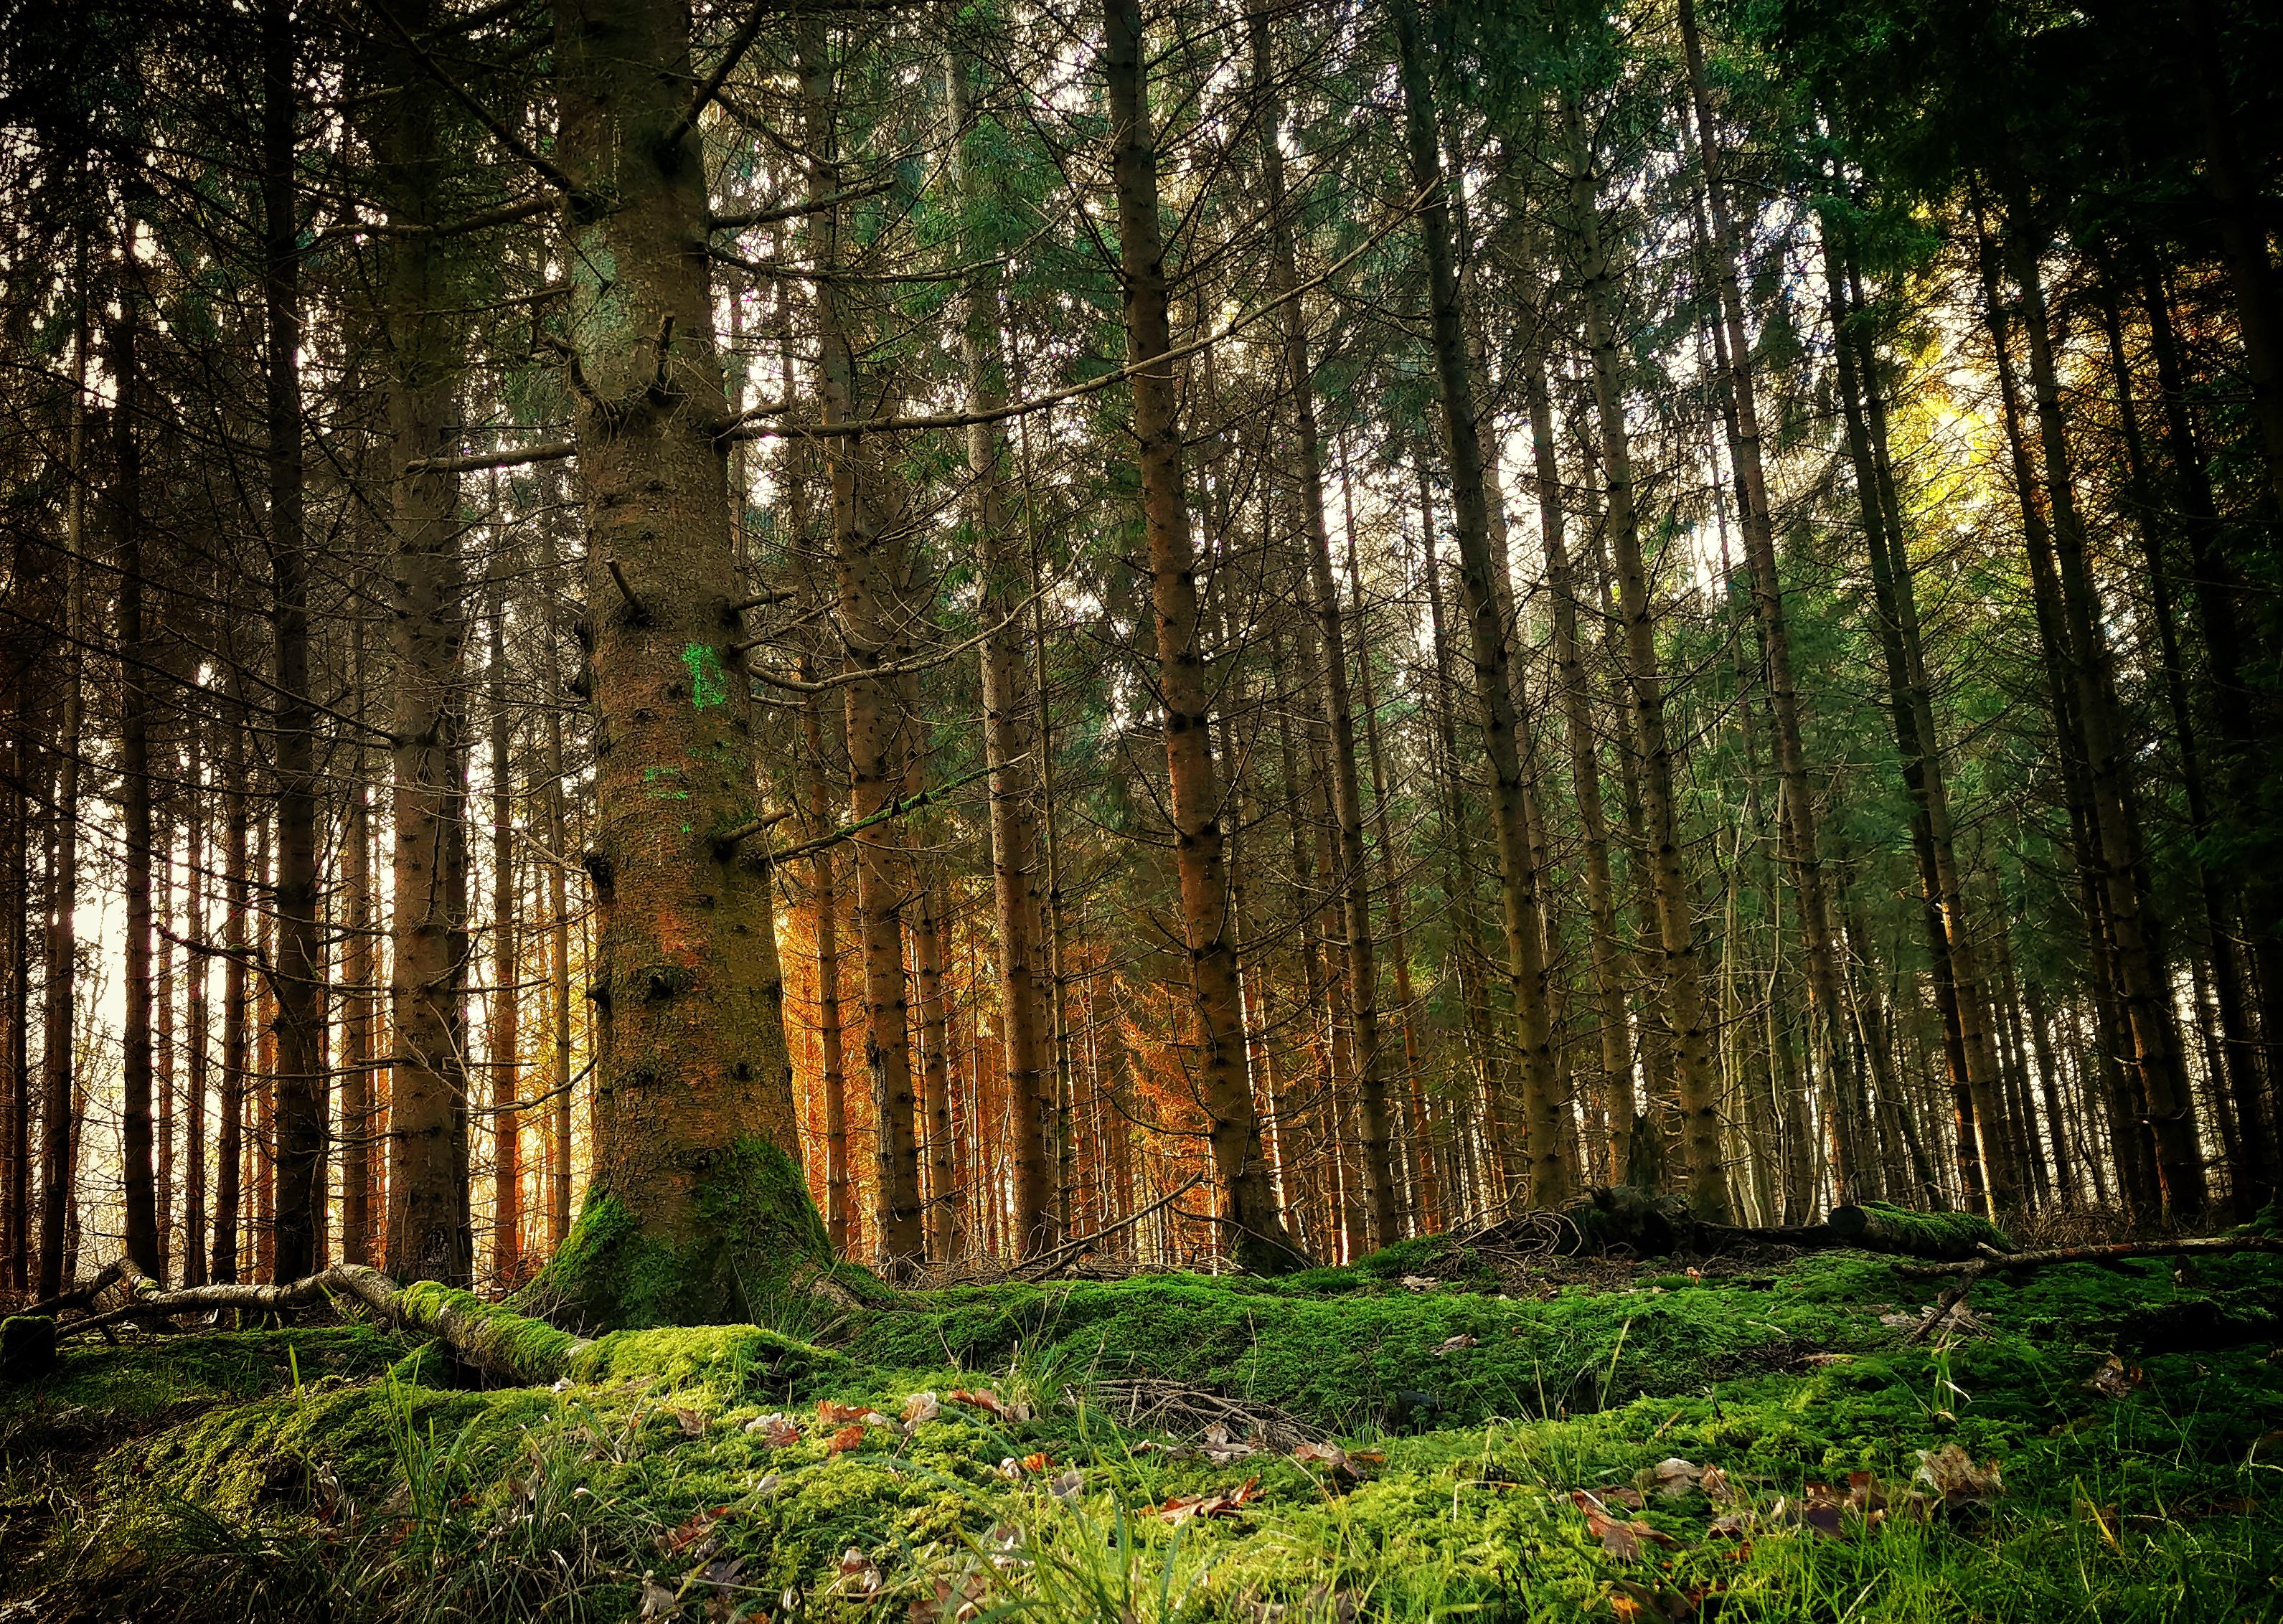 Spruce-fir Forest , HD Wallpaper & Backgrounds